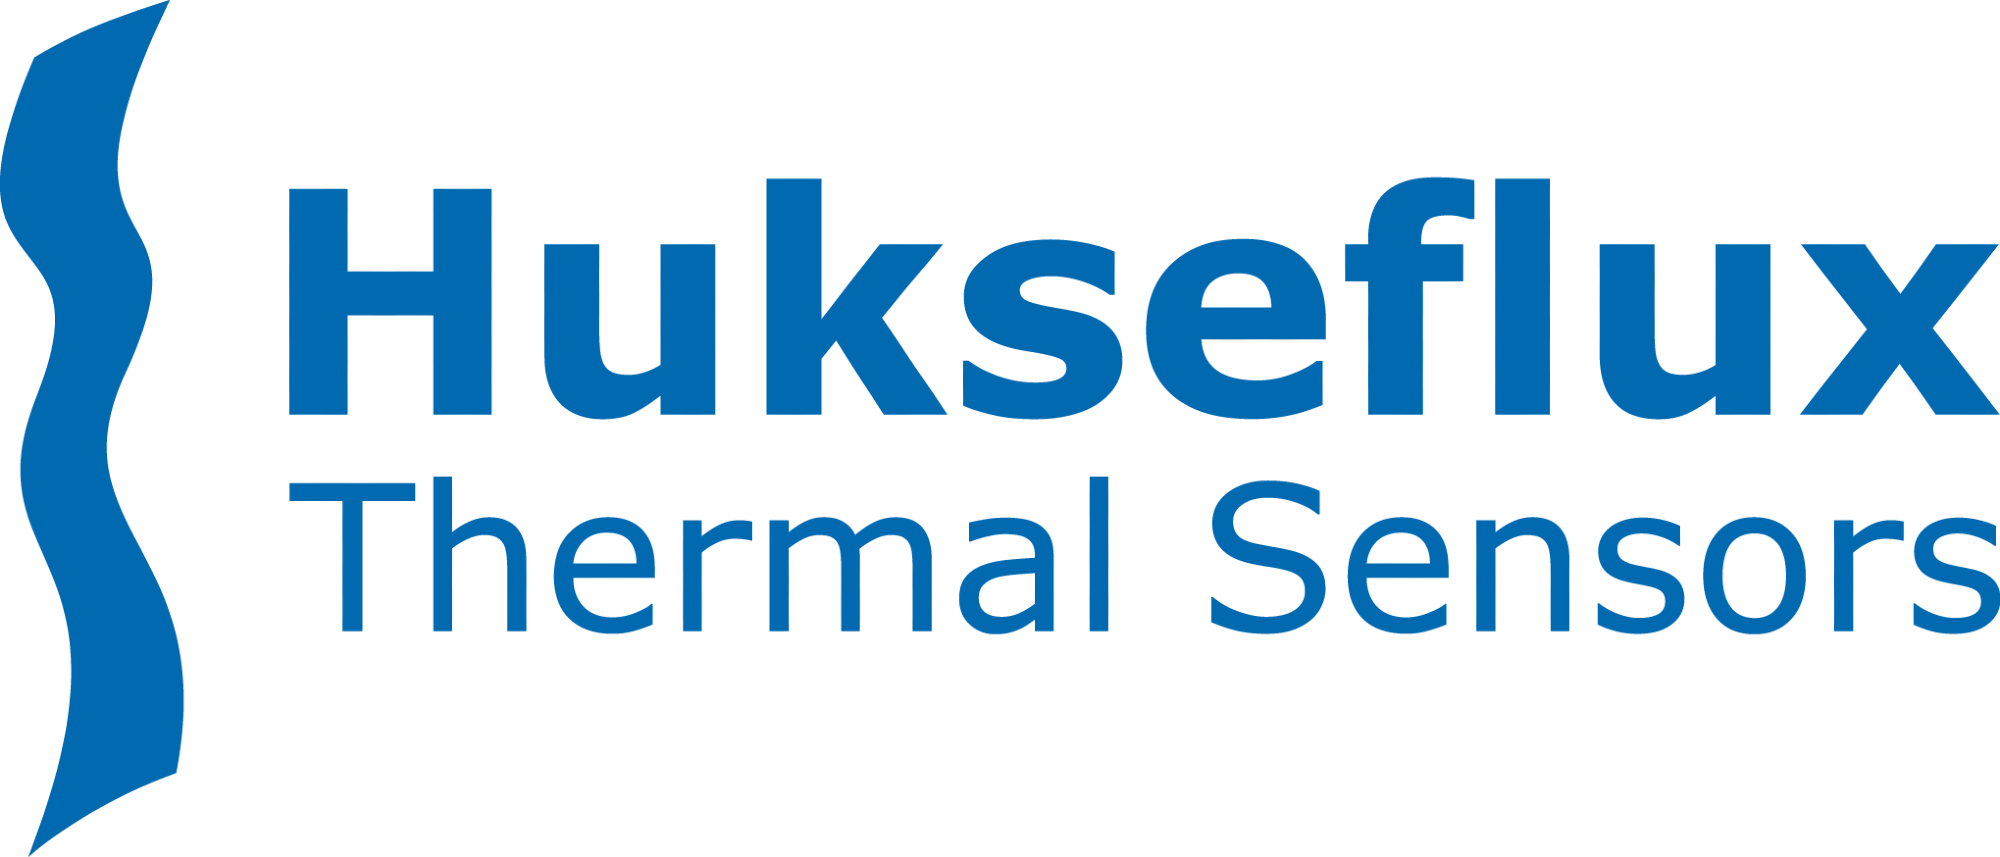 Hukseflux Thermal Sensors B.V. logo.